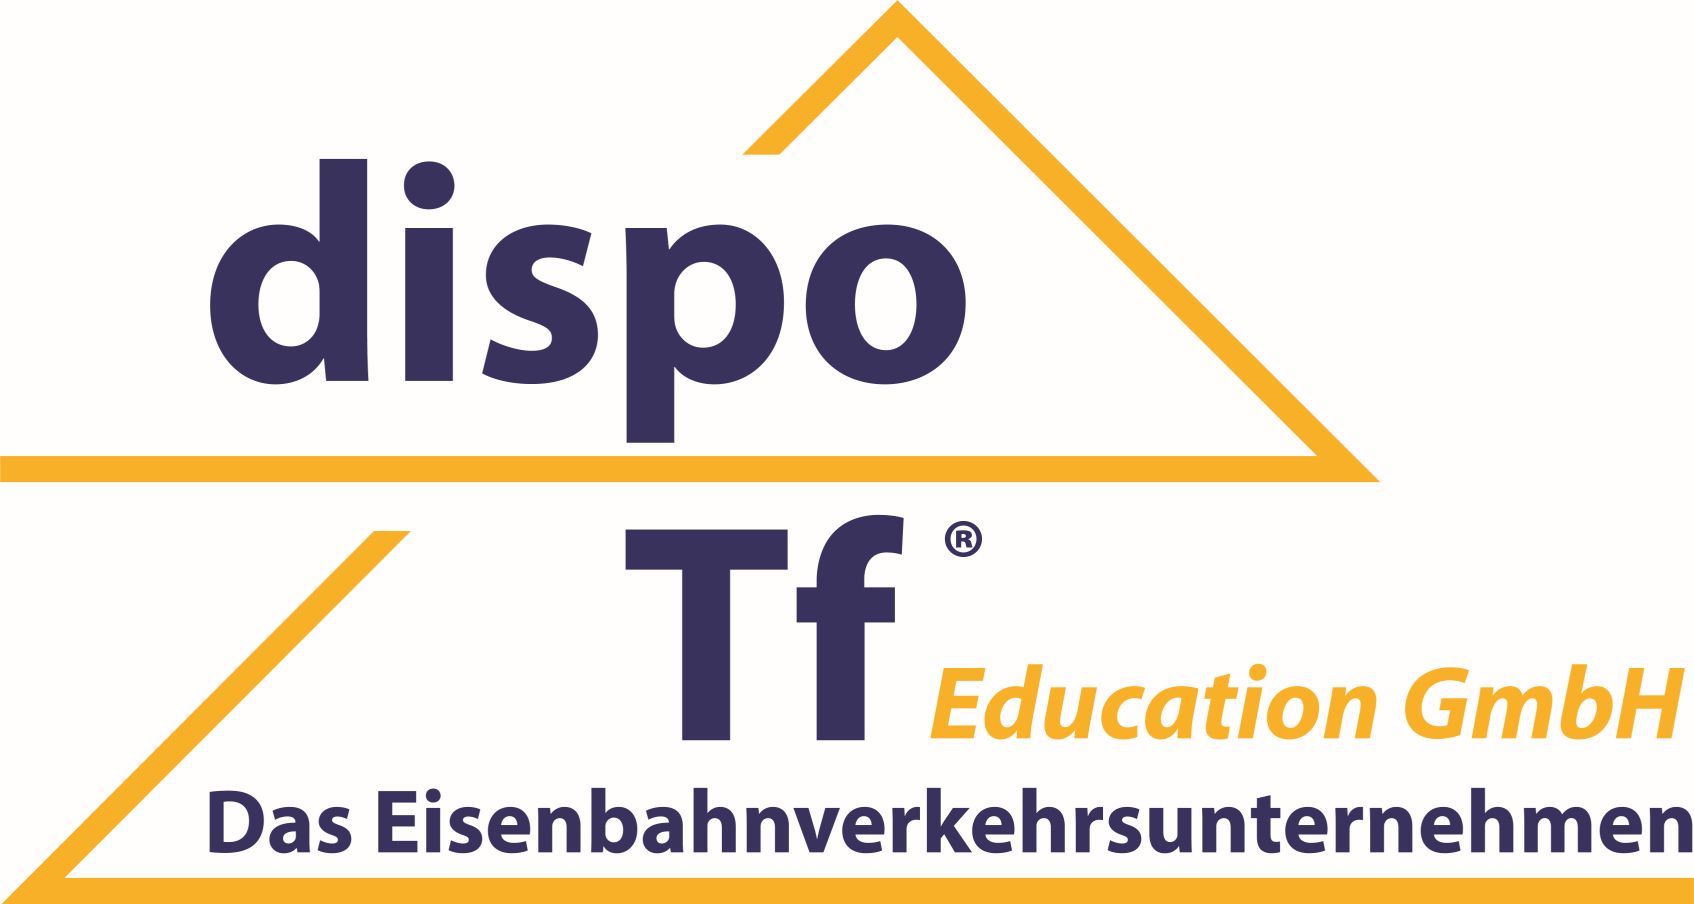 Dozent / Trainer für Triebfahrzeugführer Ausbildung in Wuppertal (m/w/d)